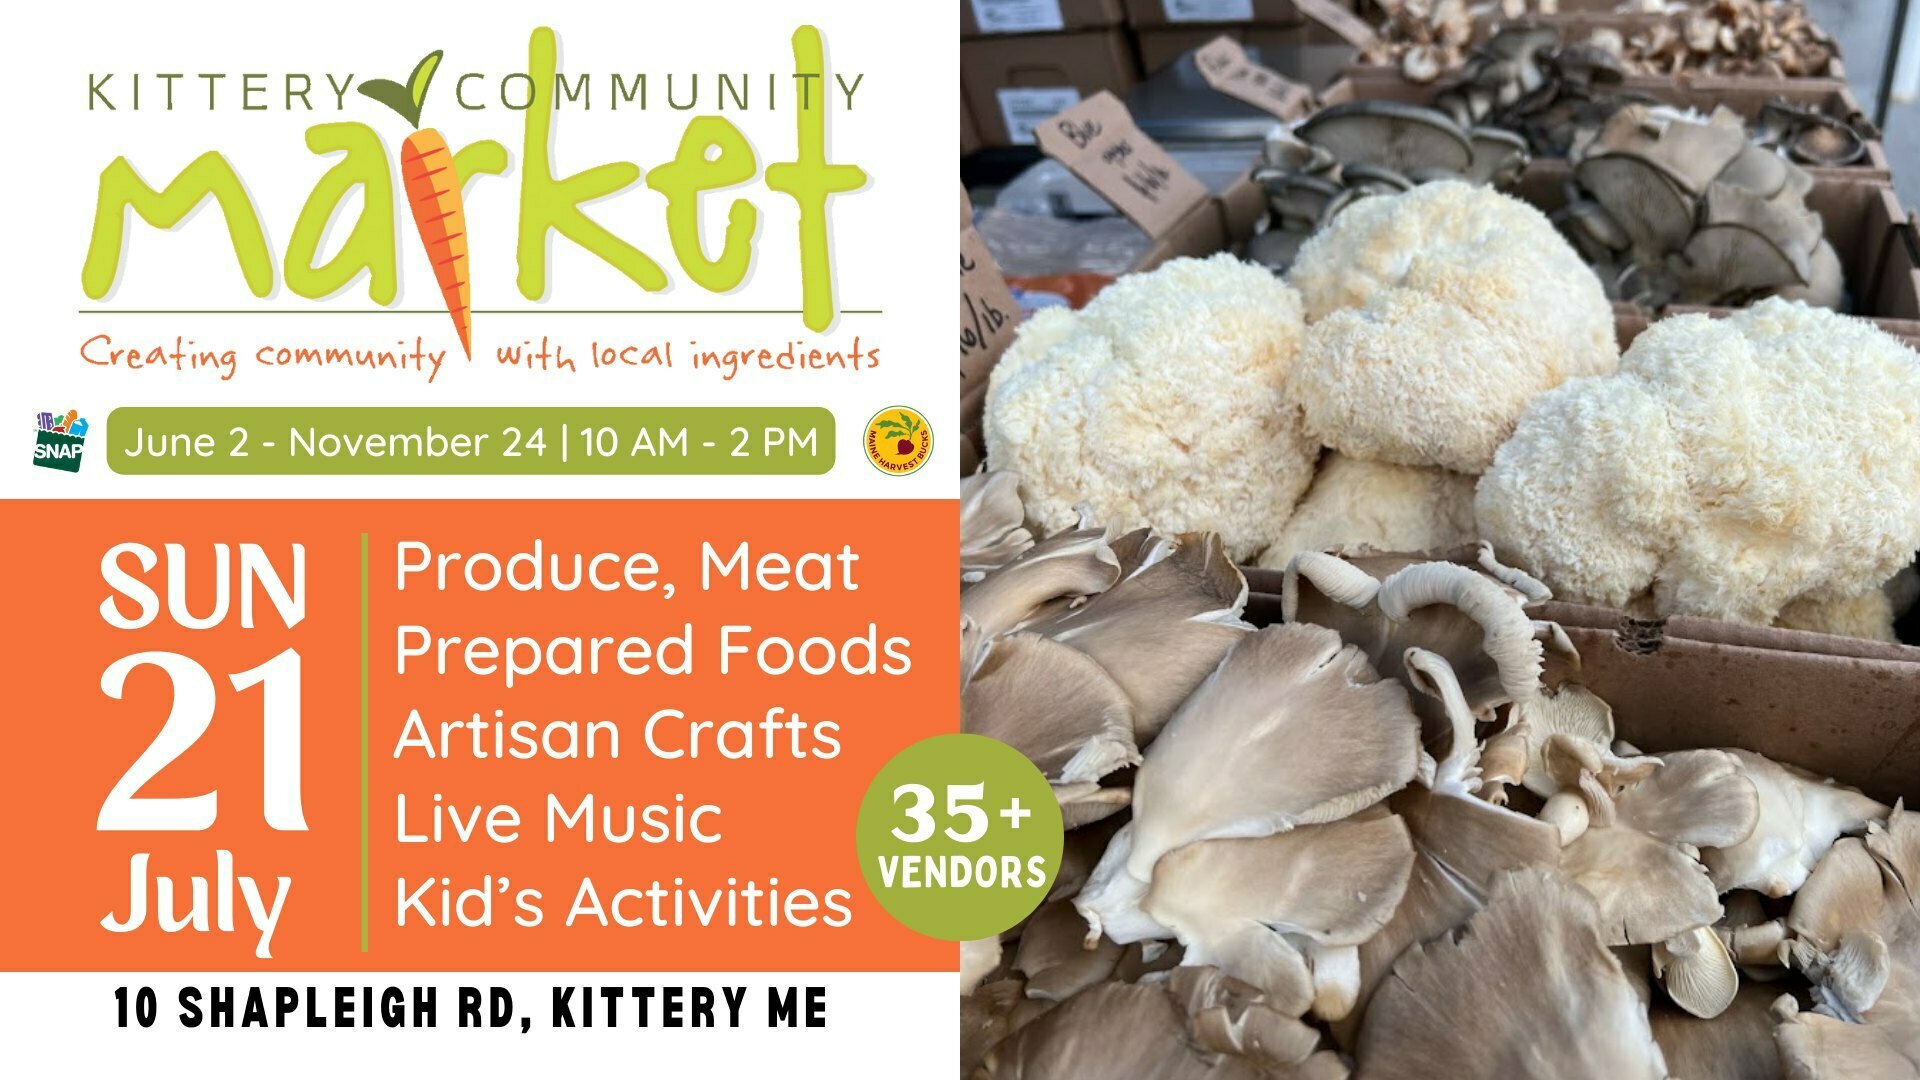 Kittery Community Market | Sunday, July 21 | 10-2 PM, Kittery, Maine, United States